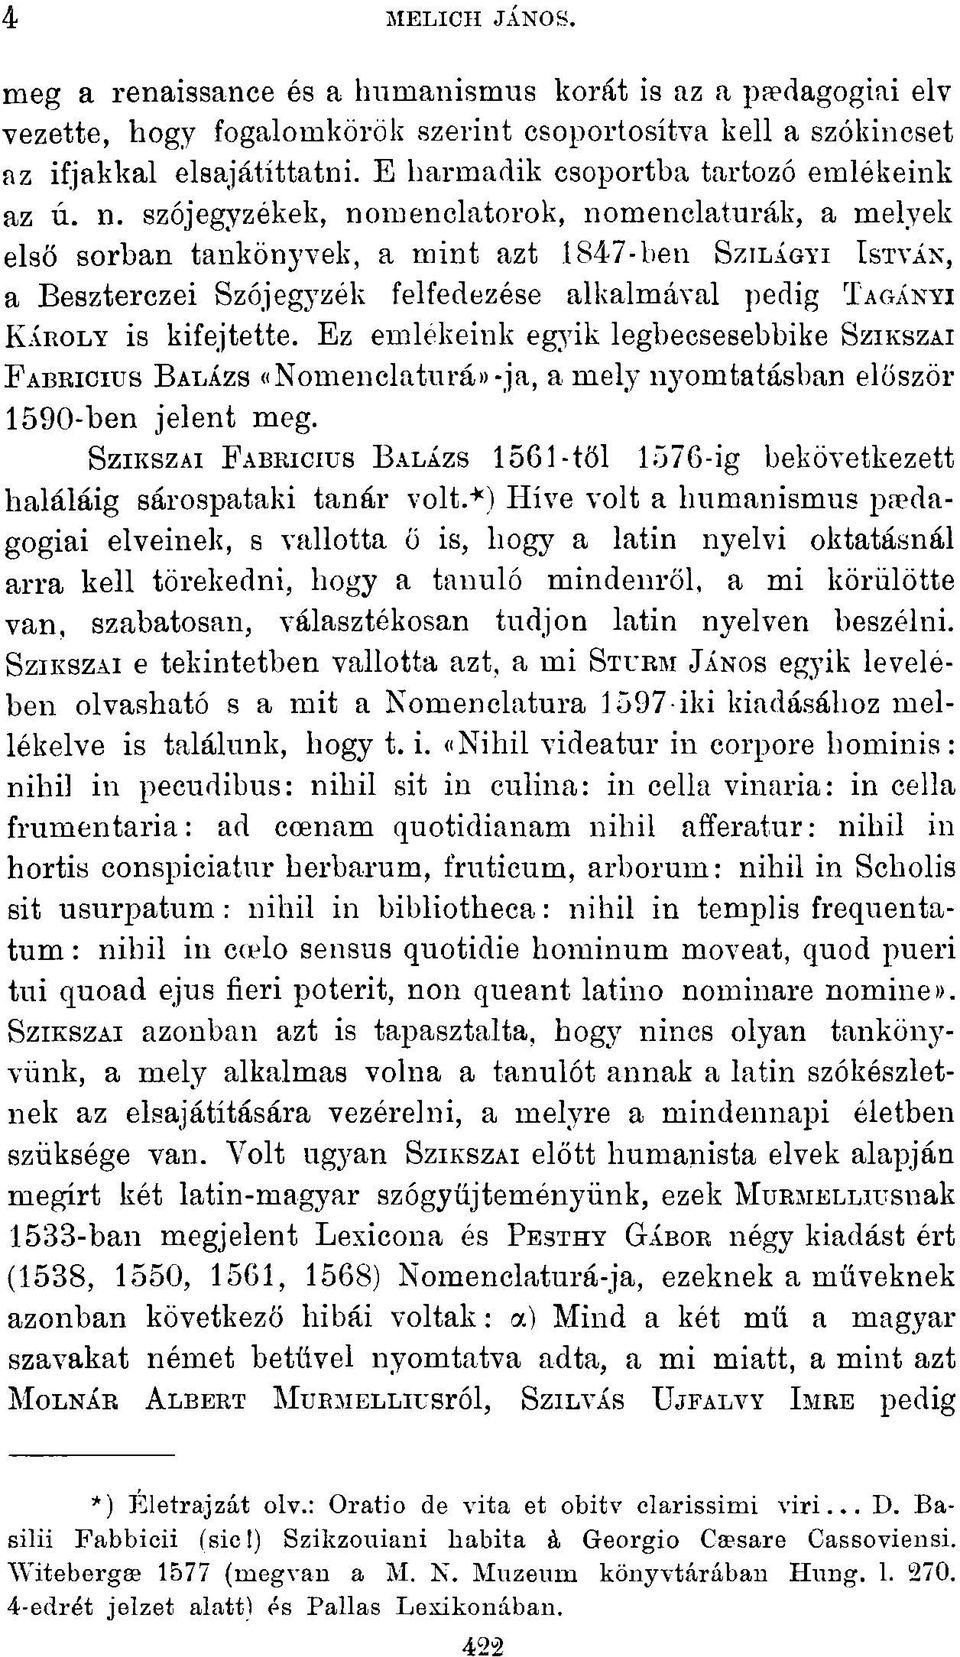 szójegyzékek, nomenclatorok, nomenclaturák, a melyek első sorban tankönyvek, a mint azt 1847-ben SZILÁGYI ISTVÁN, a Beszterczei Szójegyzék felfedezése alkalmával pedig TAGÁNYI KÁROLY is kifejtette.